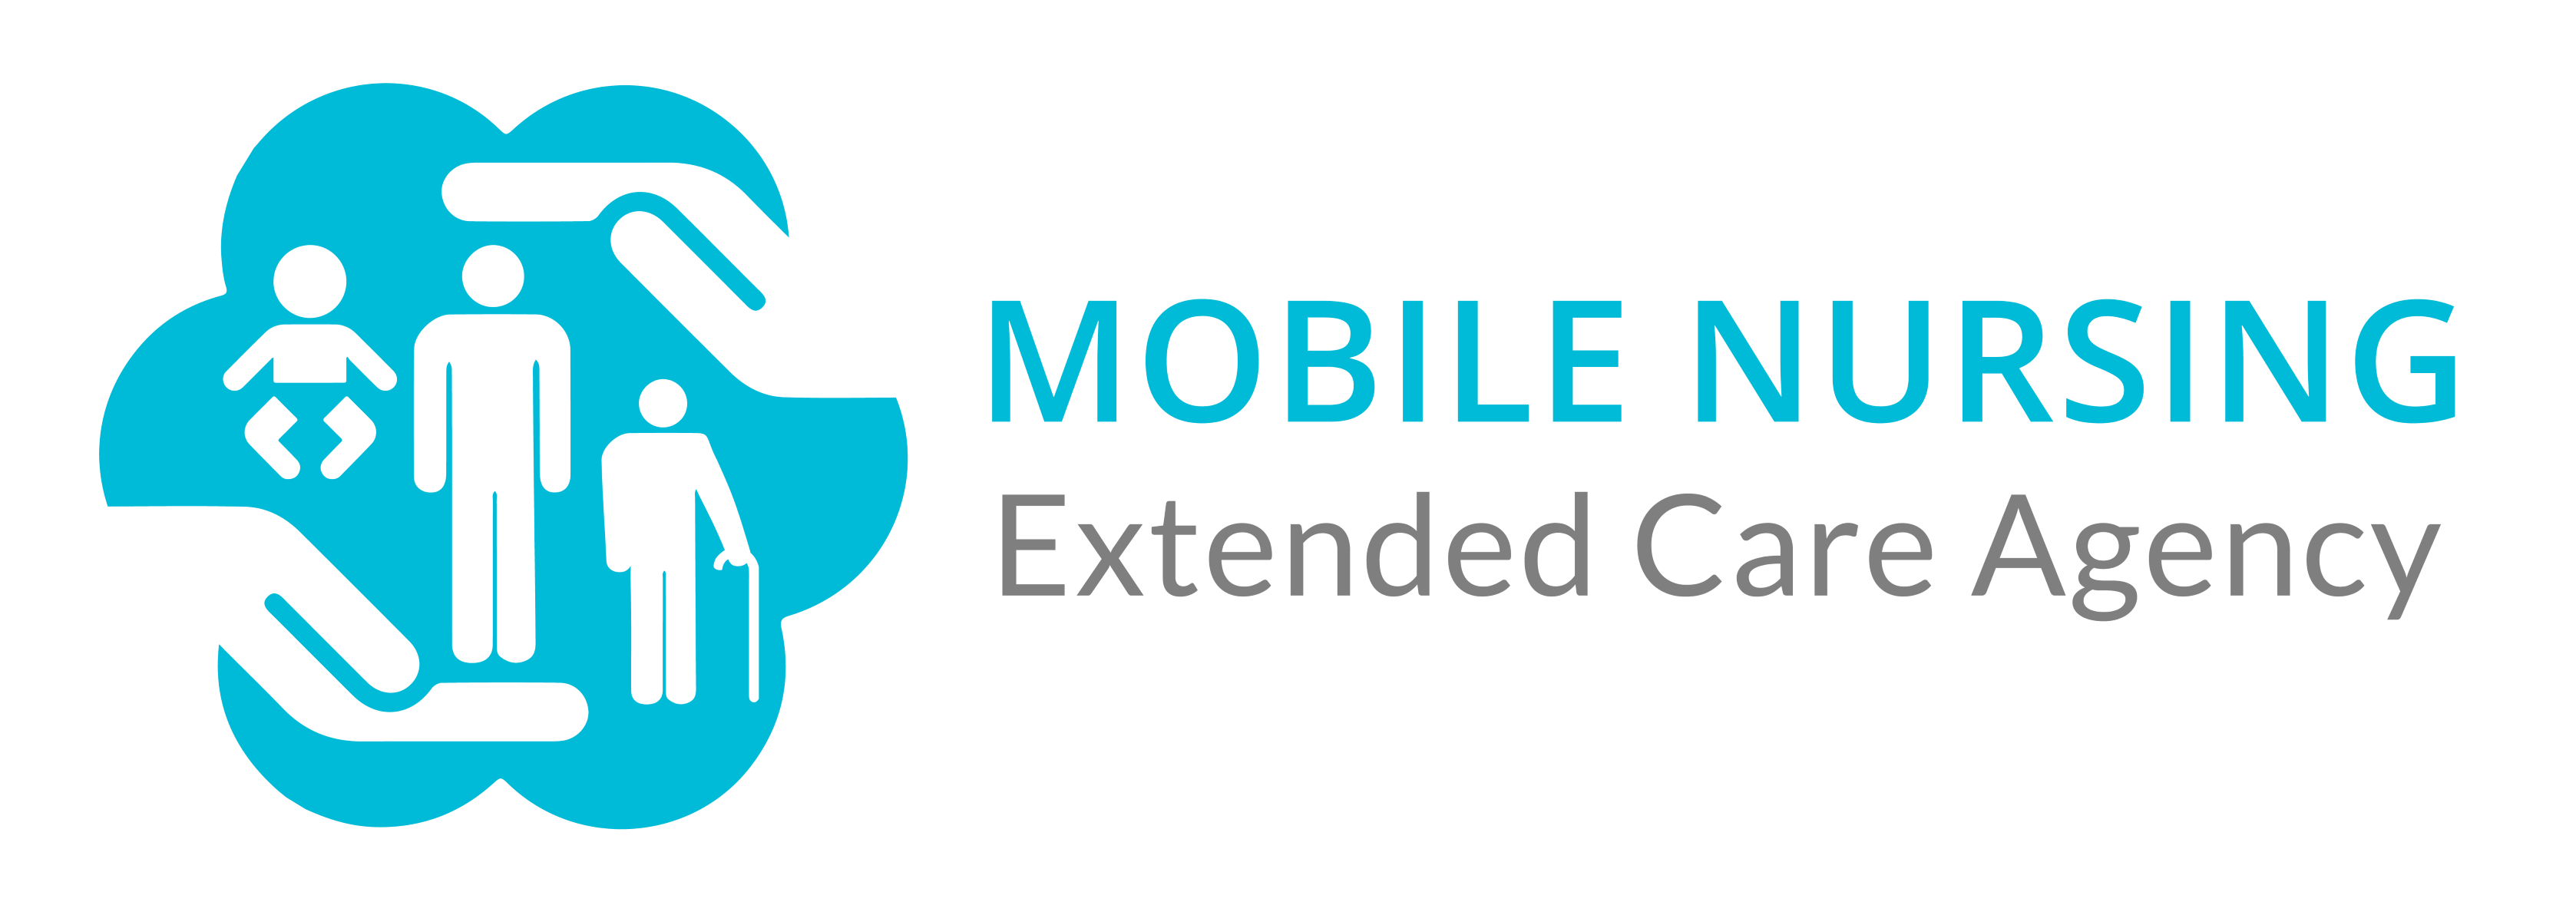 LVN Jobs | Mobile Nursing Extended Care Agency Logo